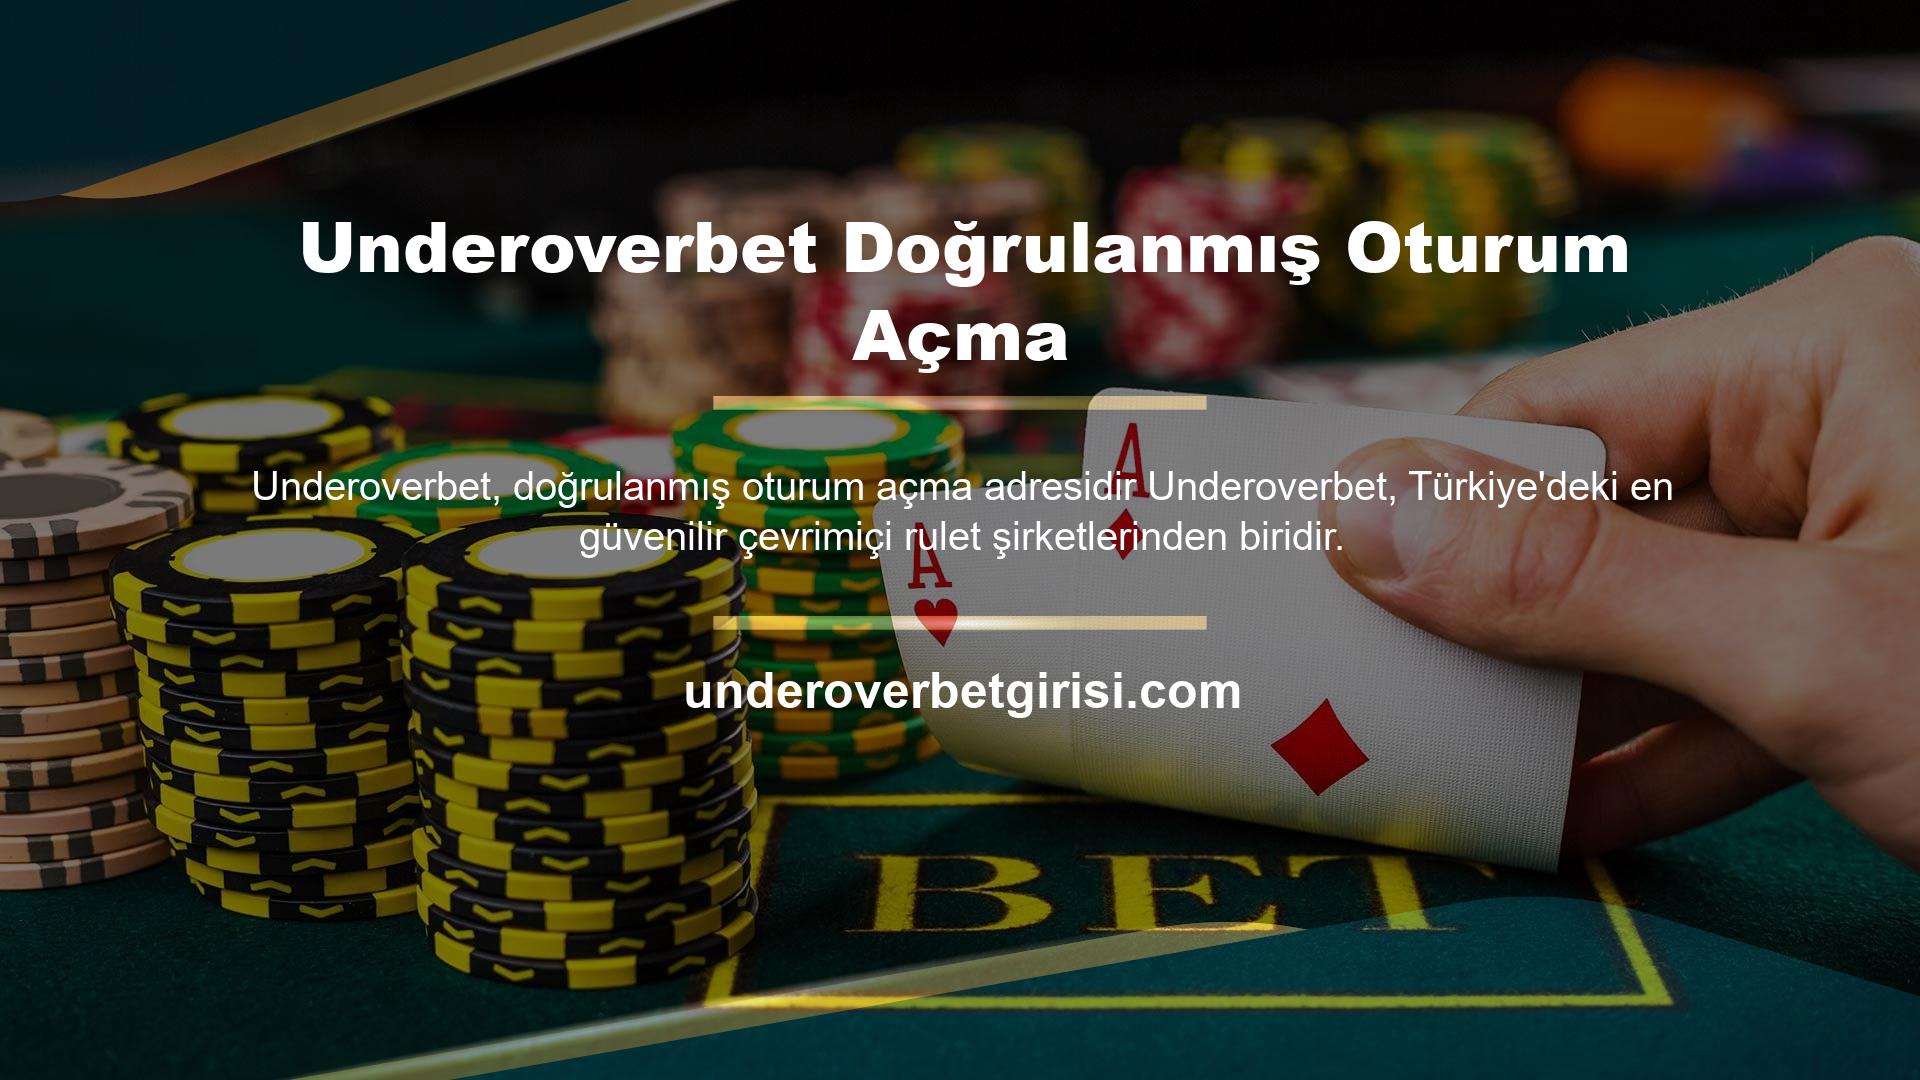 Underoverbet, slot camiasında yer edinmiştir ve Türkiye'deki tüm rulet oyuncuları tarafından sevilmekte ve takdir edilmektedir